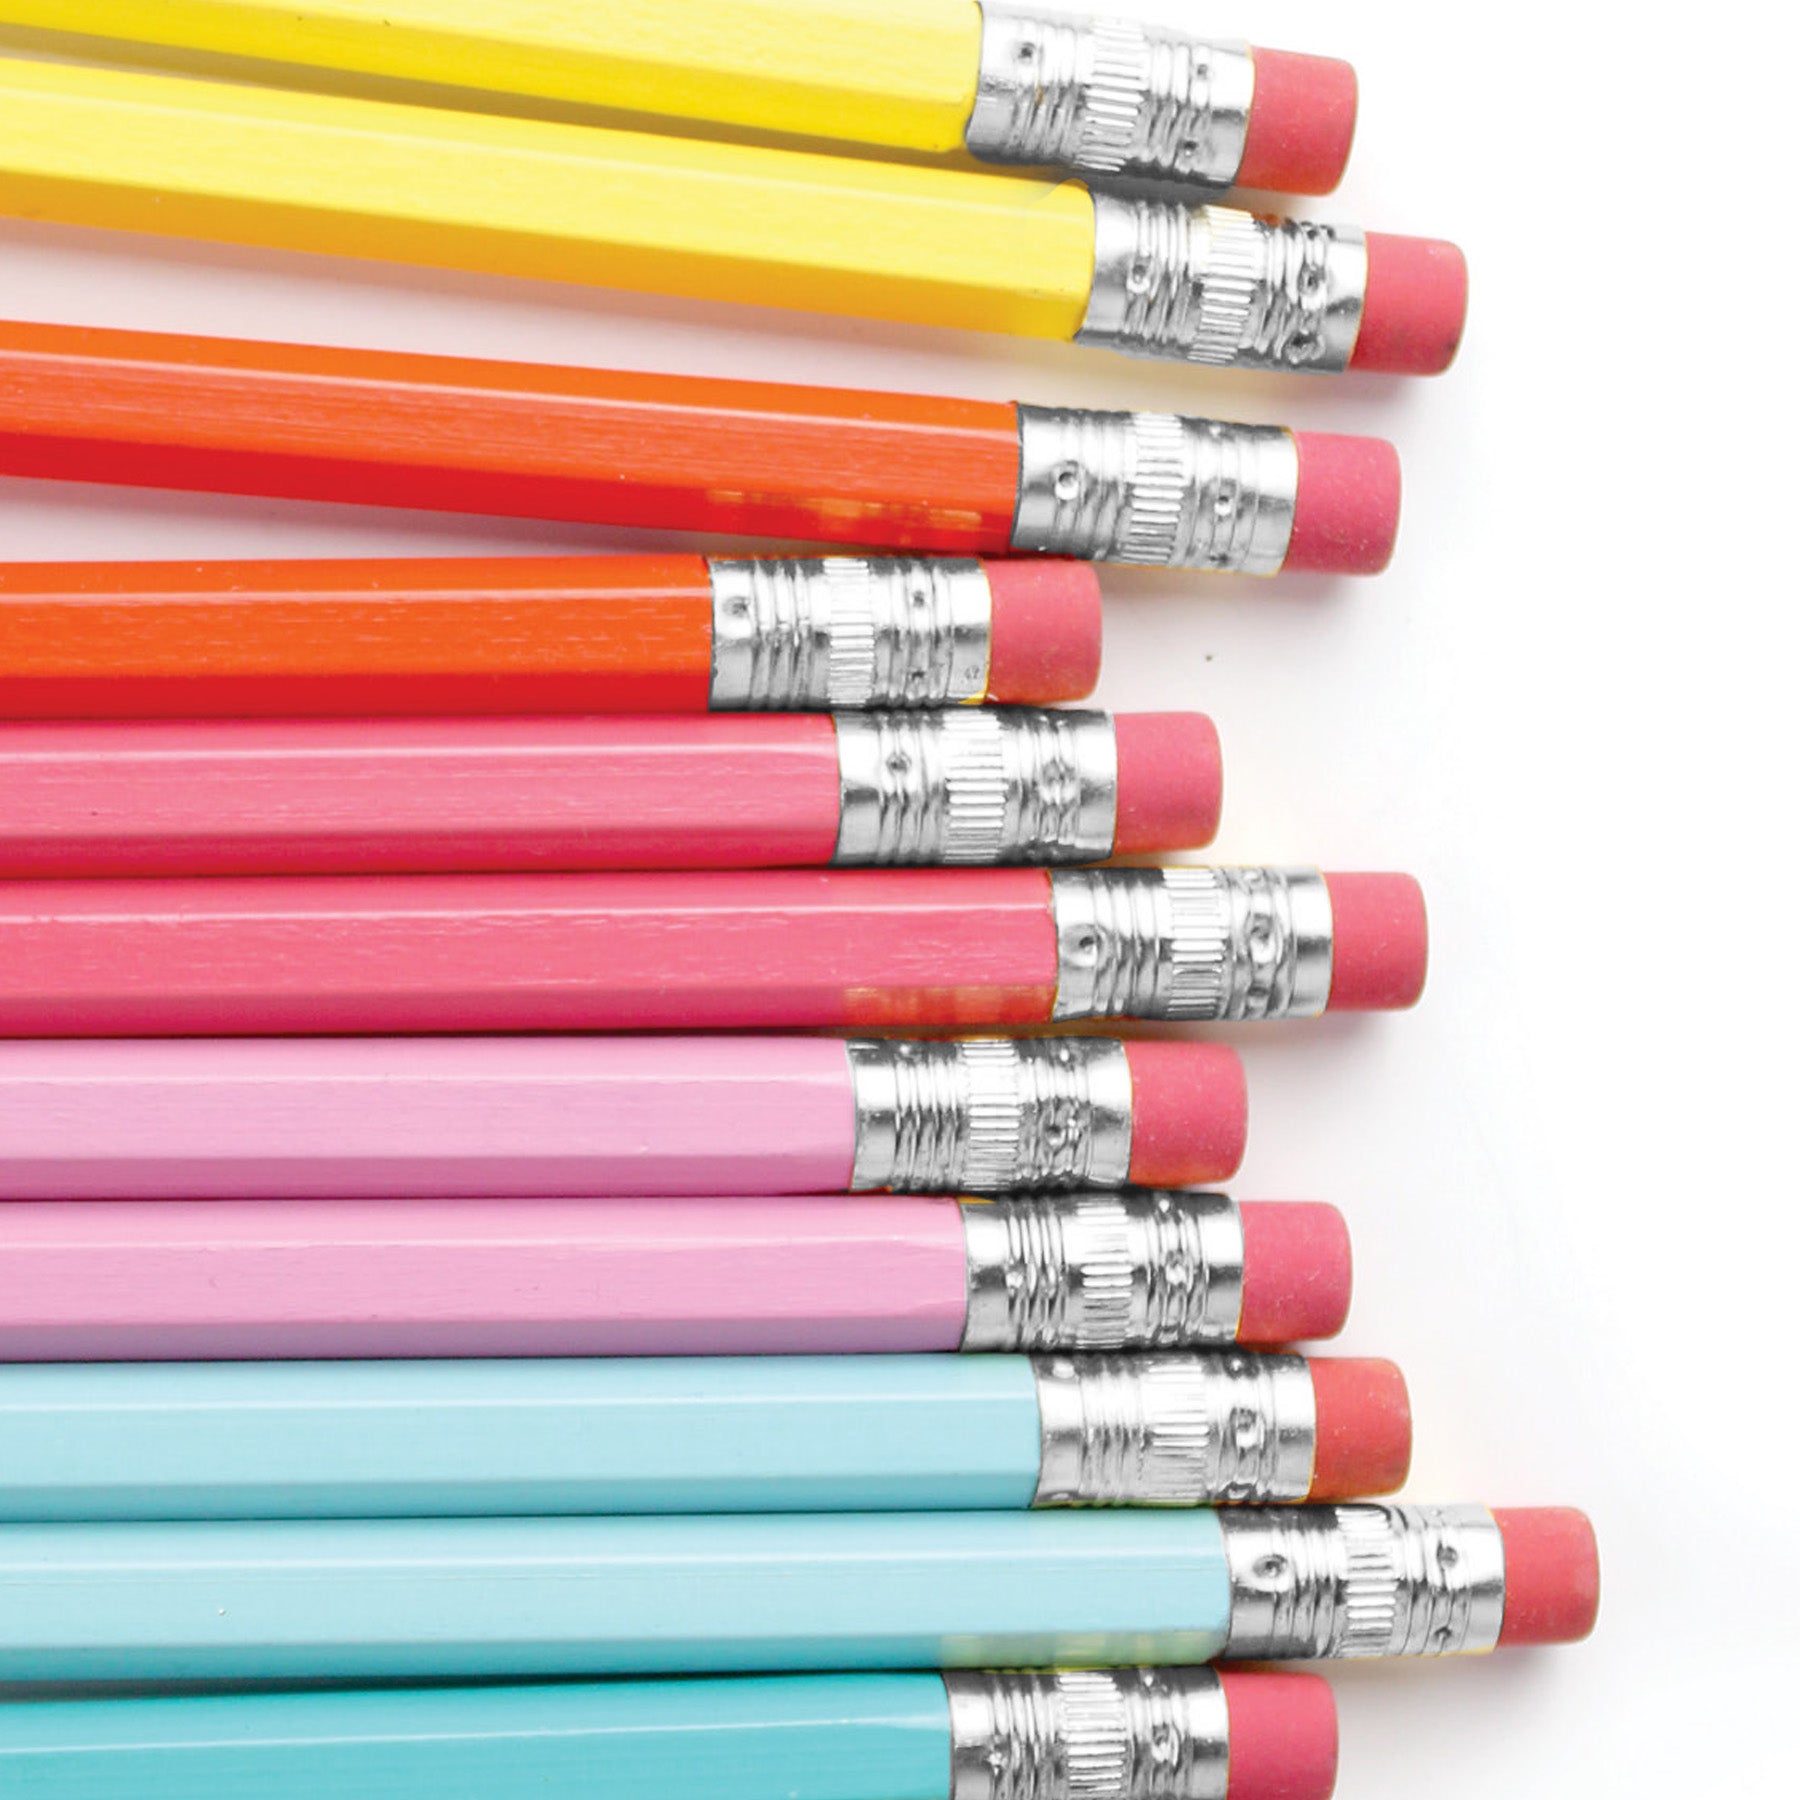 Rainbow Crayons, Colored Pencils, School Supplies, Rainbow Pencil